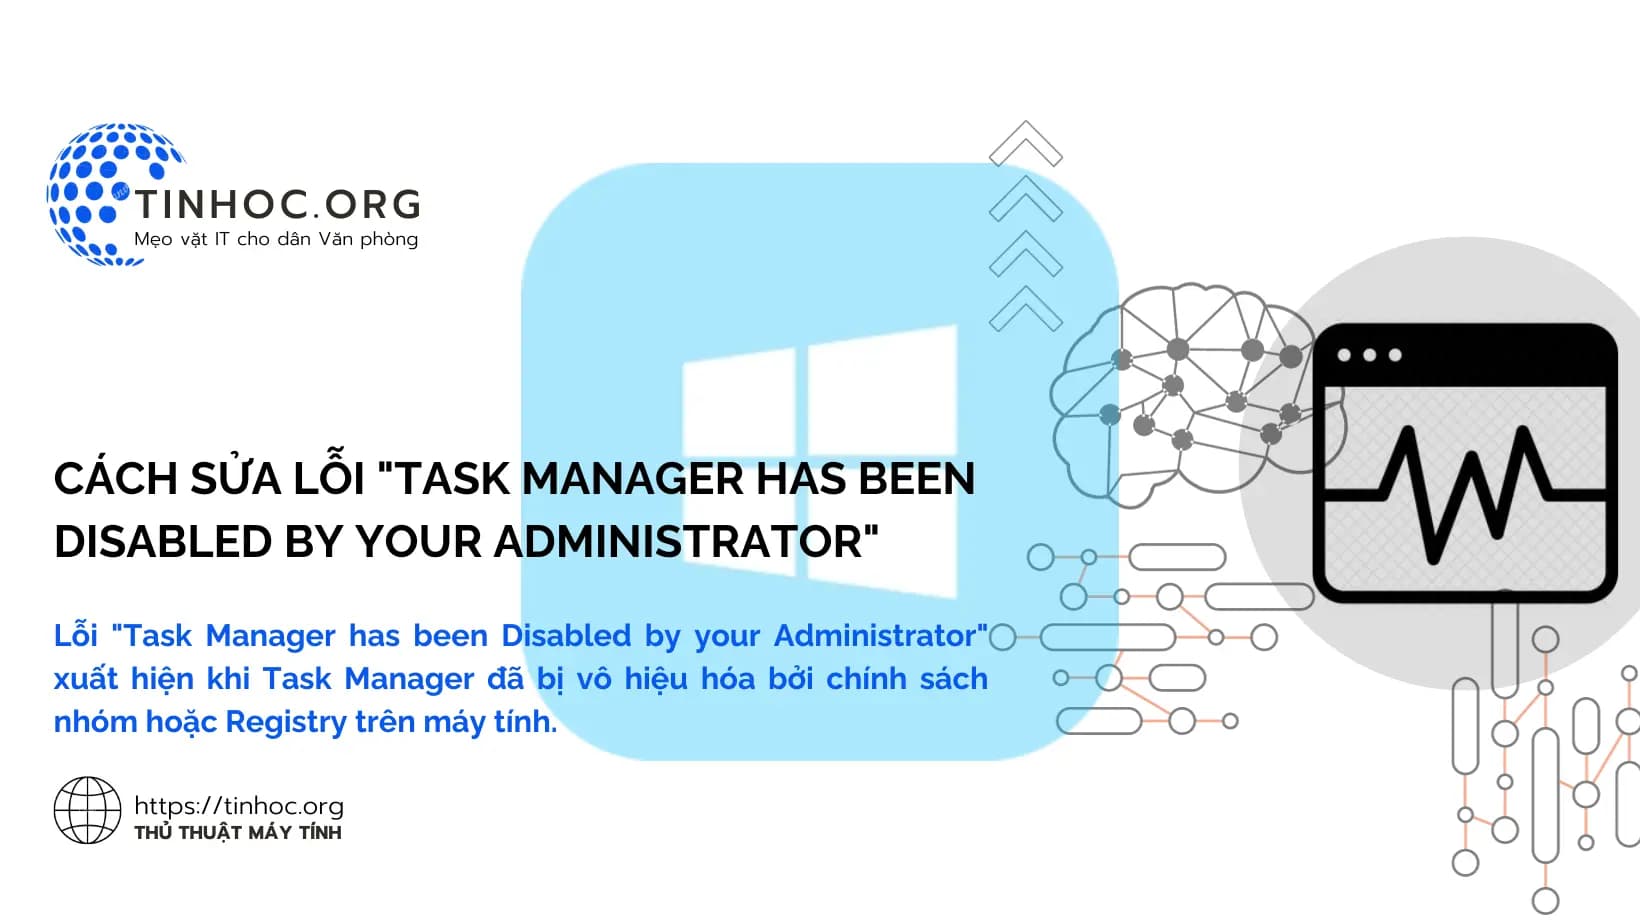 Lỗi "Task Manager has been Disabled by your Administrator" xuất hiện khi Task Manager đã bị vô hiệu hóa bởi chính sách nhóm hoặc Registry trên máy tính.